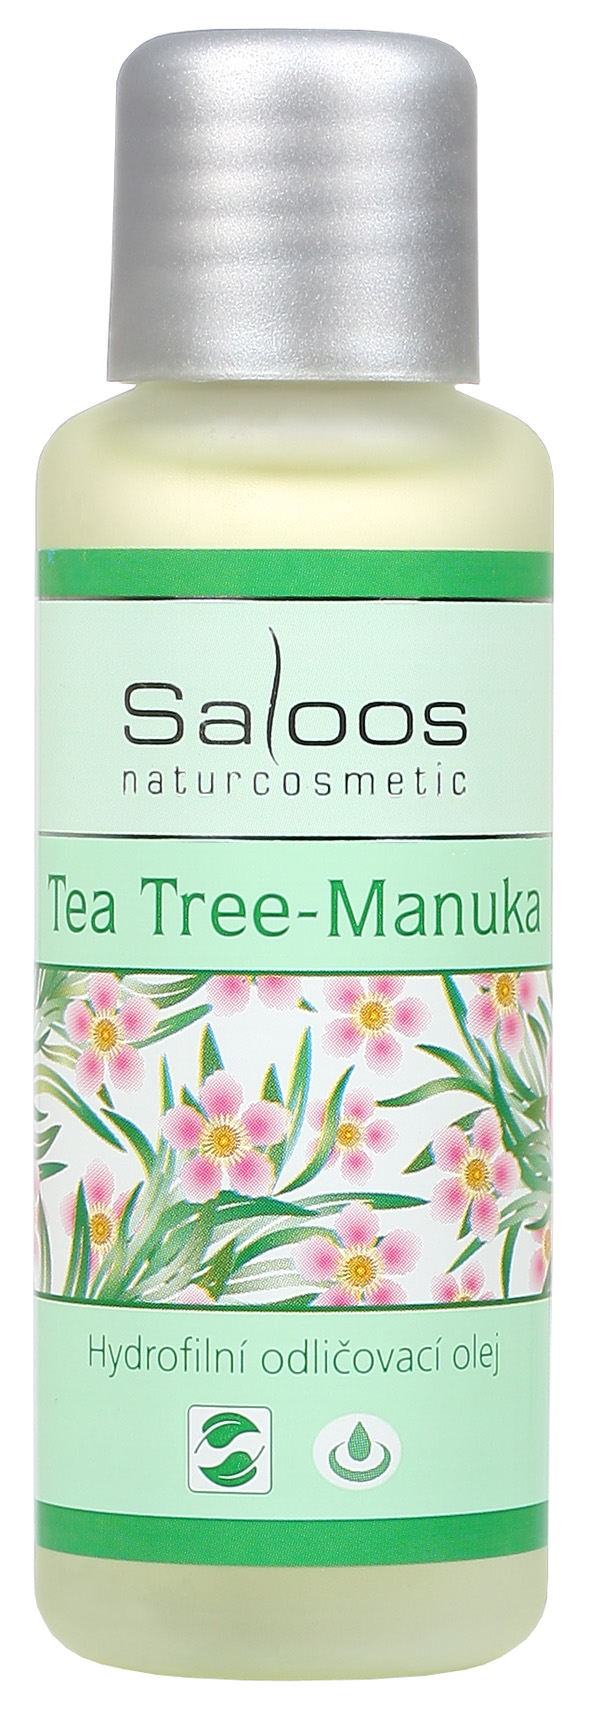 Tea tree Manuka - hydrofilní odličovací olej 50